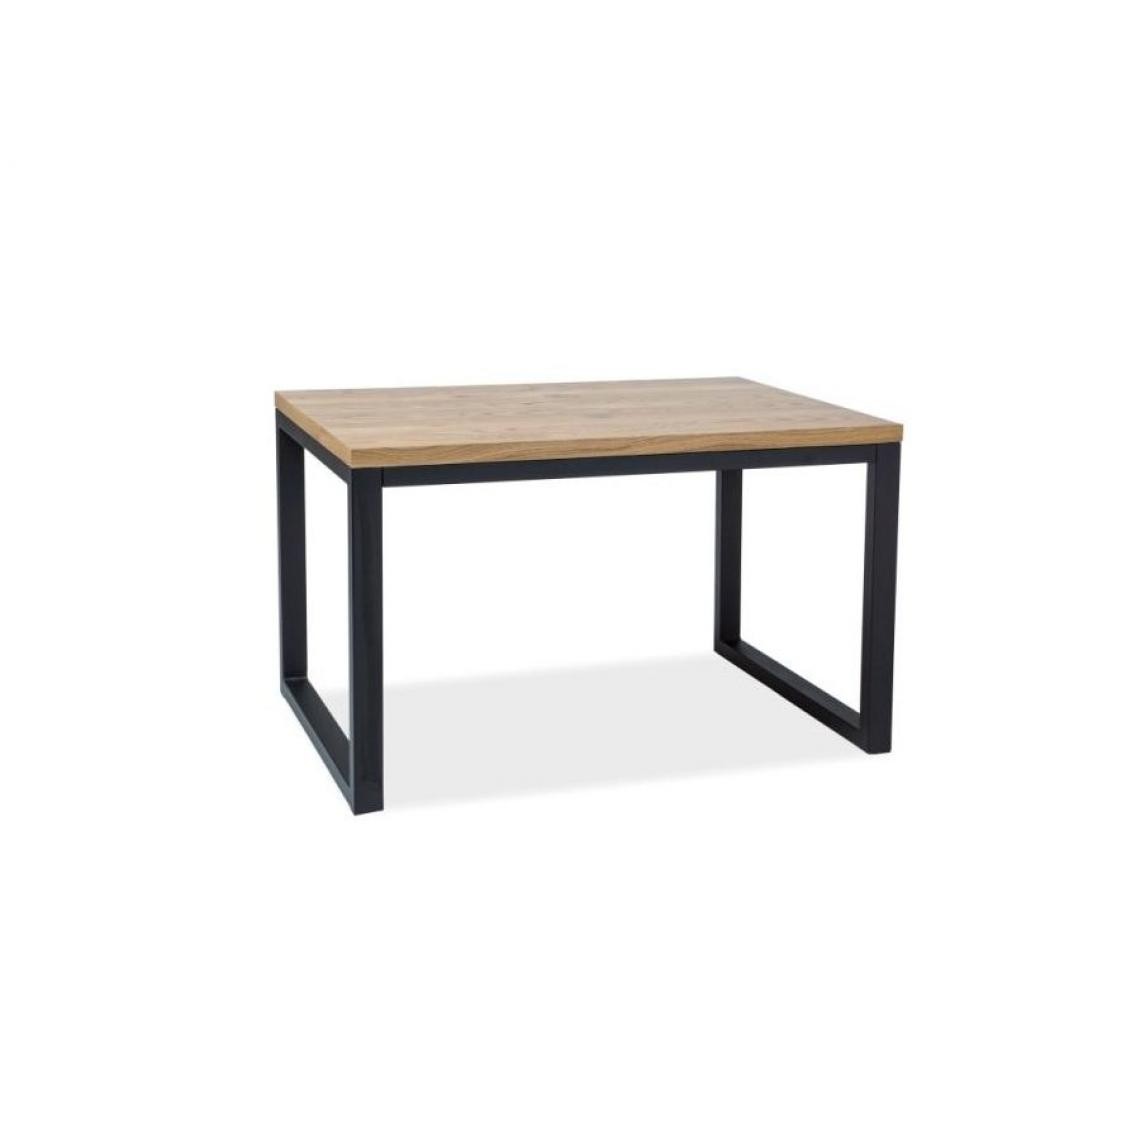 Hucoco - LORAH - Table moderne avec un piètement en métal - 150x90x78 cm - Plateau en bois huilé - Table fixe salon - Chêne - Tables à manger